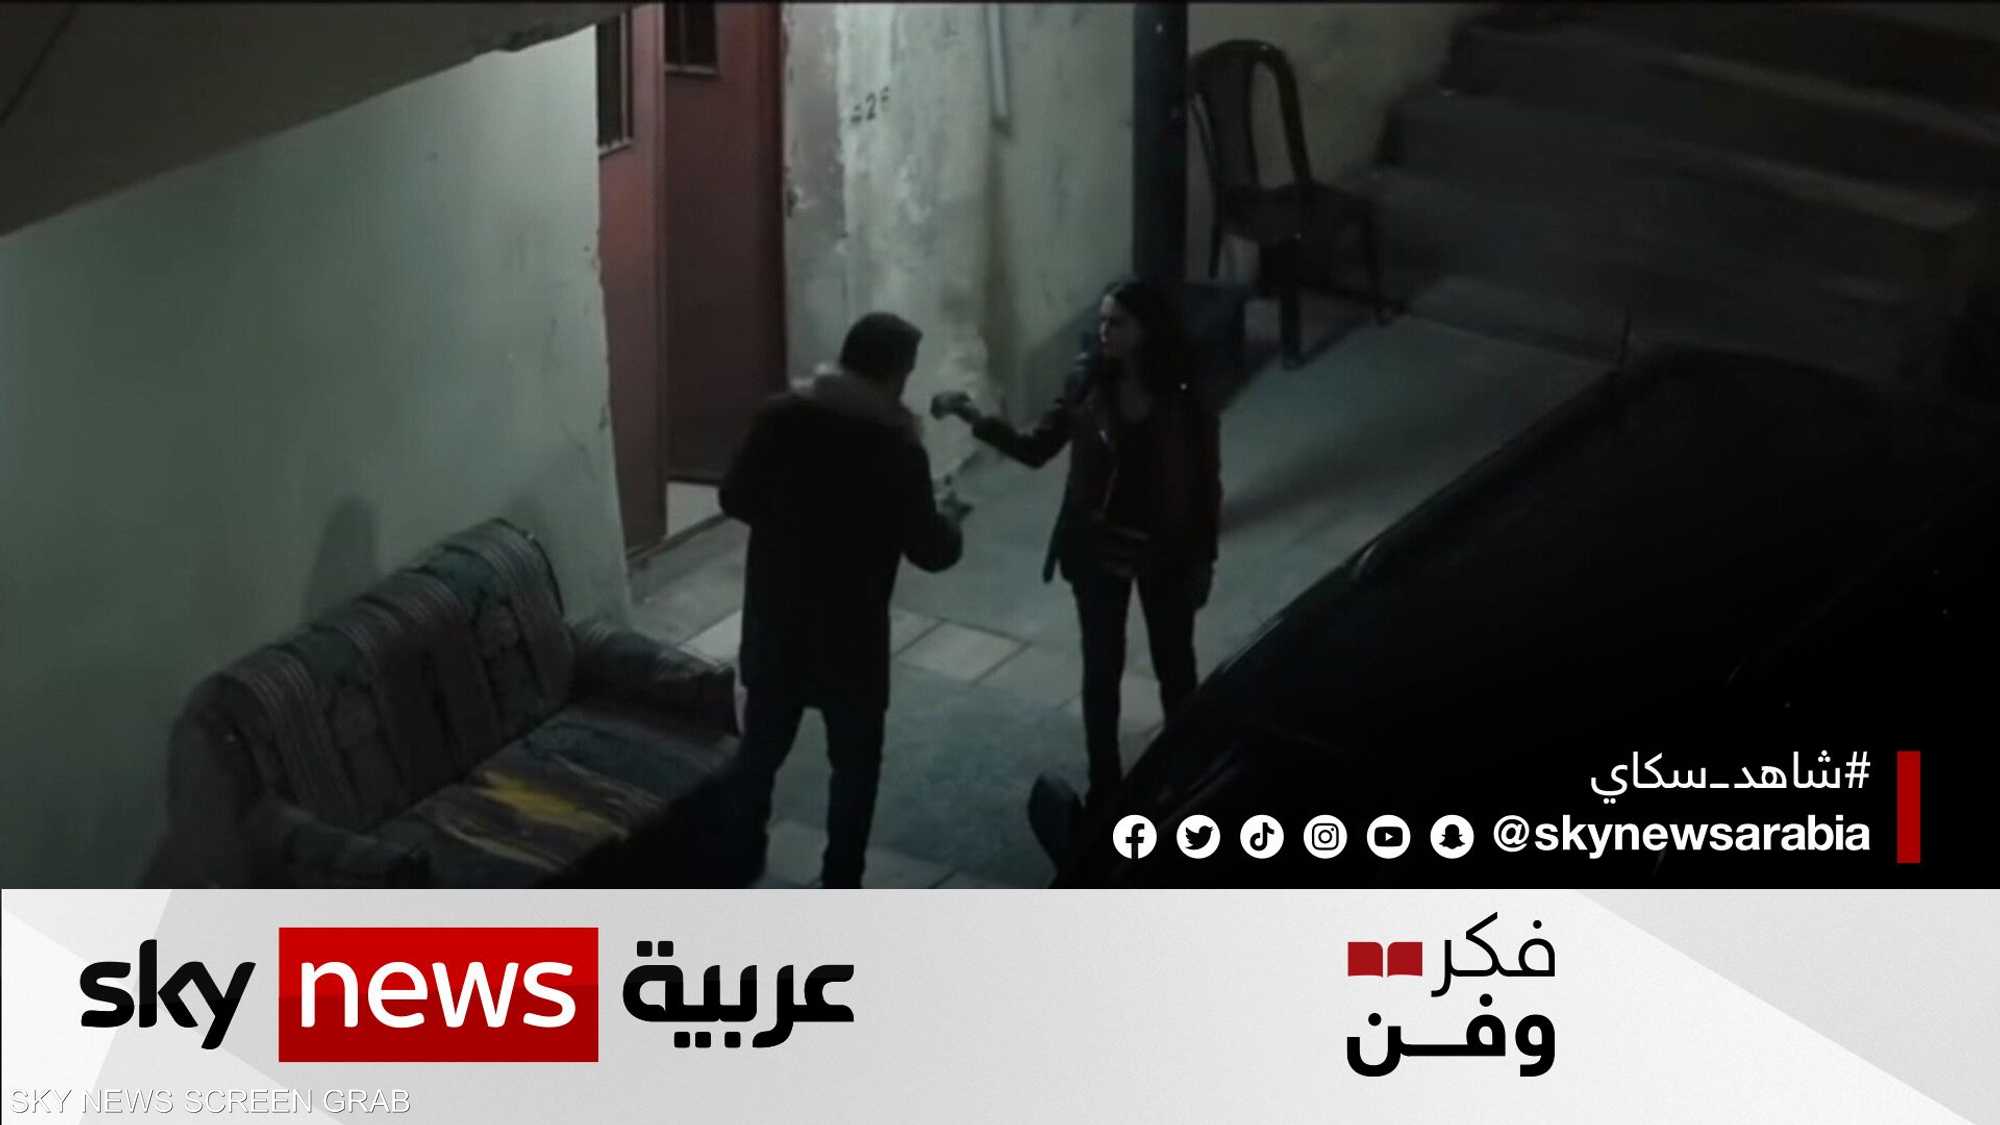 فيلم "الحارة" لباسل غندور.. رؤية جديدة لسينما الواقع عربيا